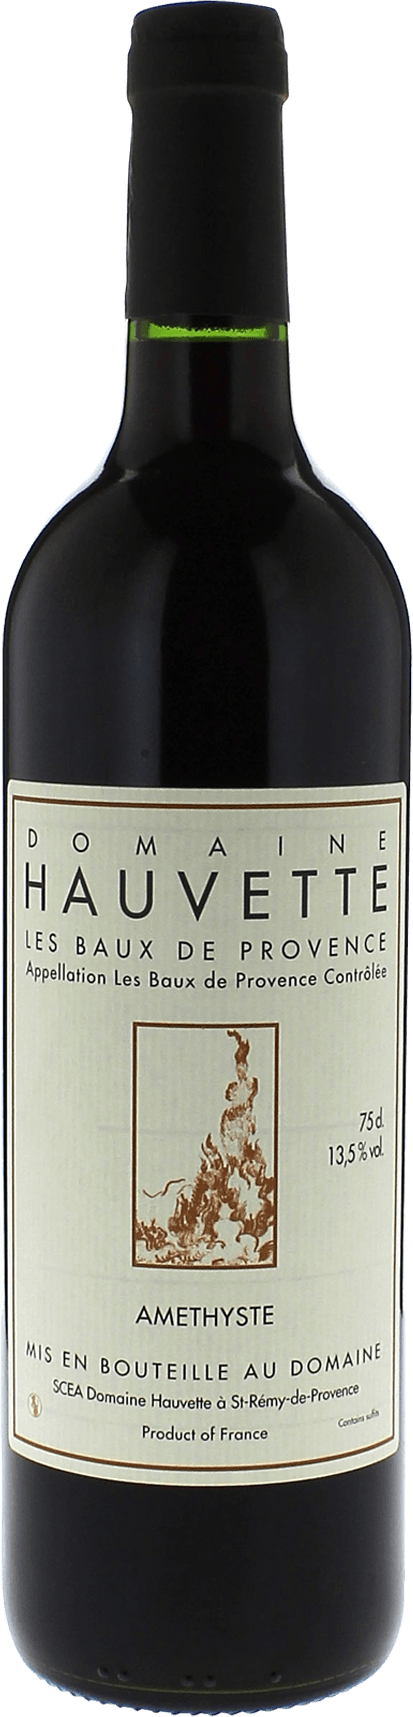 Domaine hauvette amethyste 2020  Baux de Provence AOP, Provence